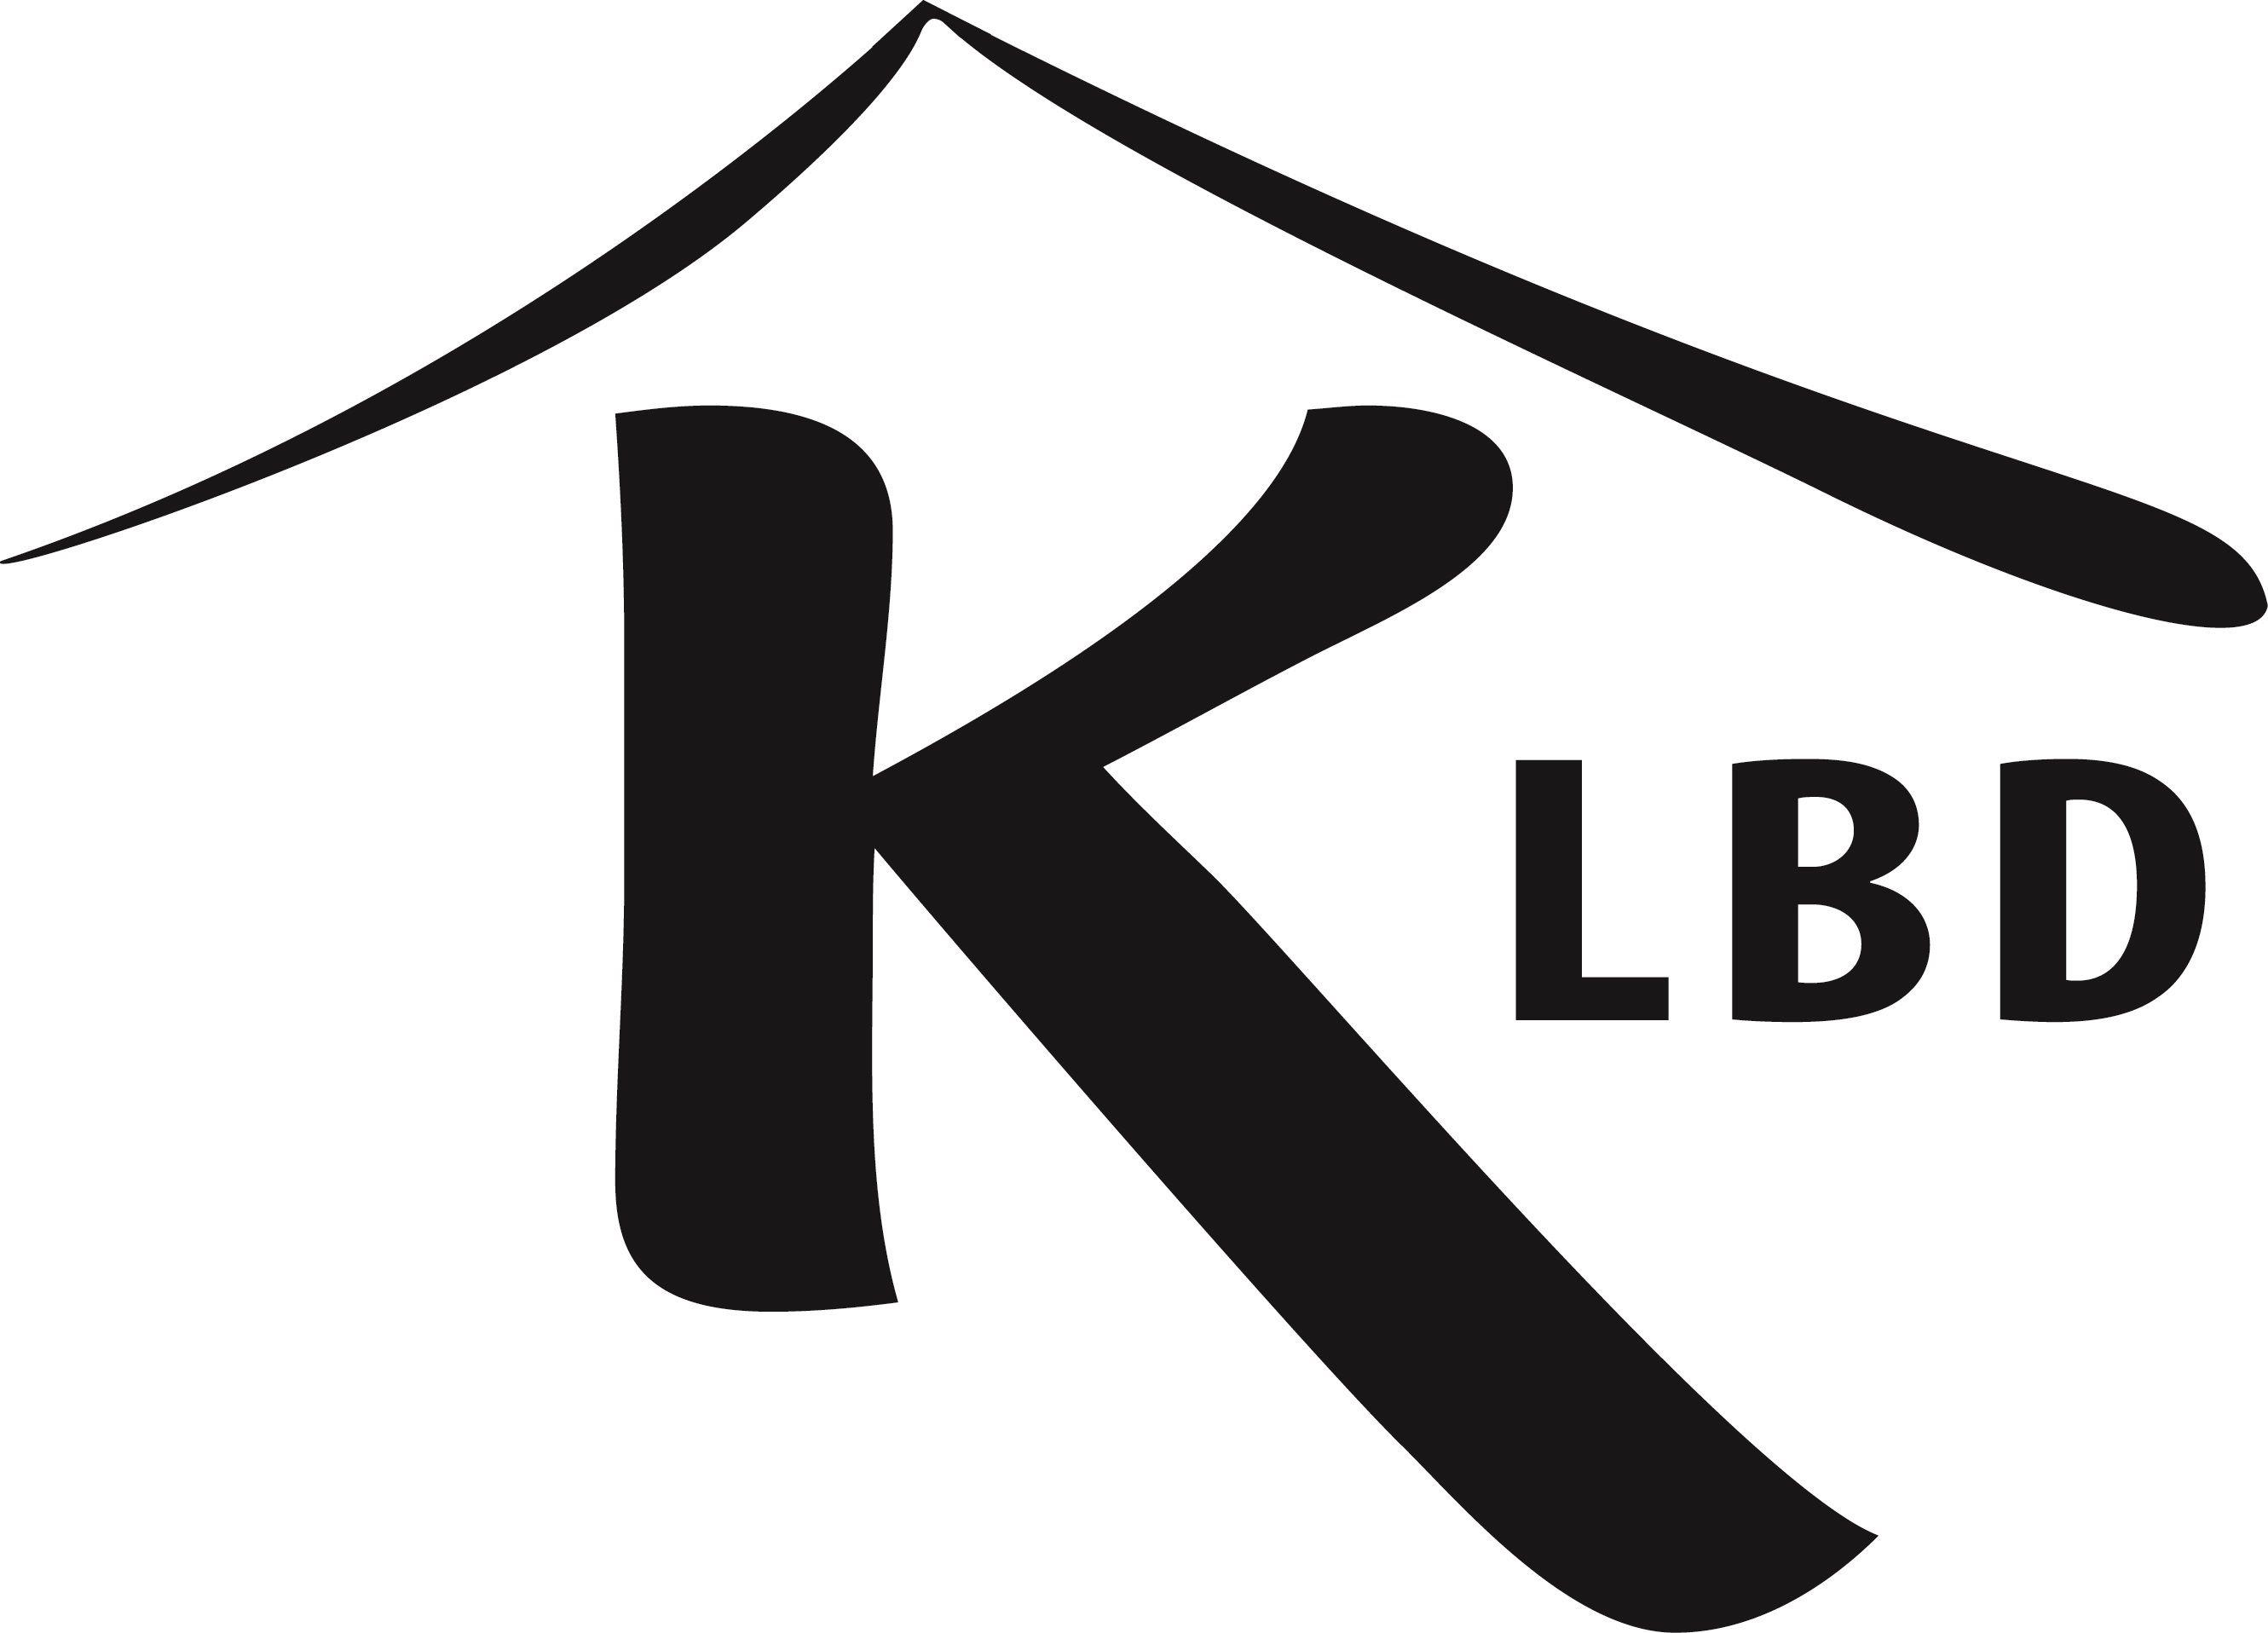 Kosher Logo - MAY 2014 CERTIFICATION AWARED